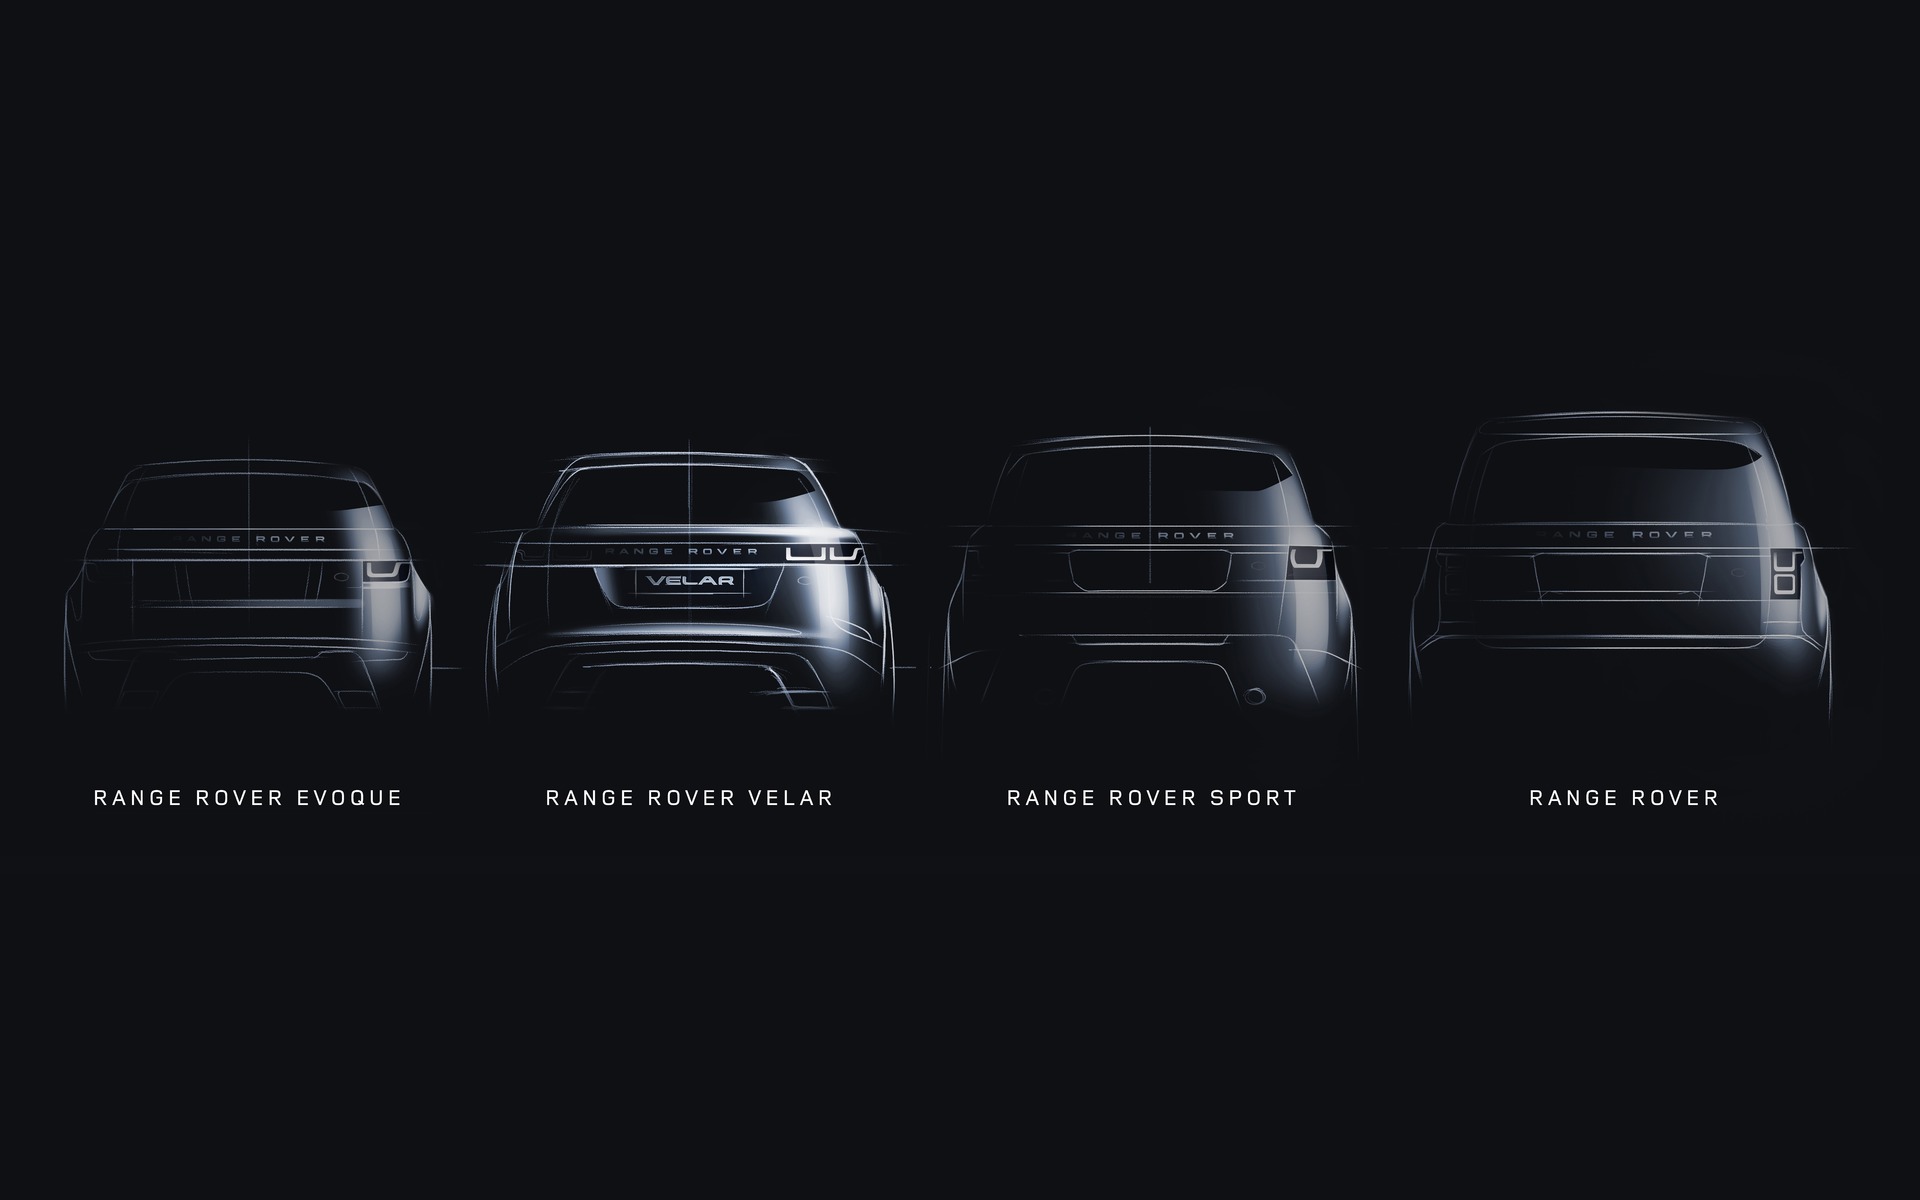 2018 Range Rover Velar: Fourth Member of the Family - The Car Guide